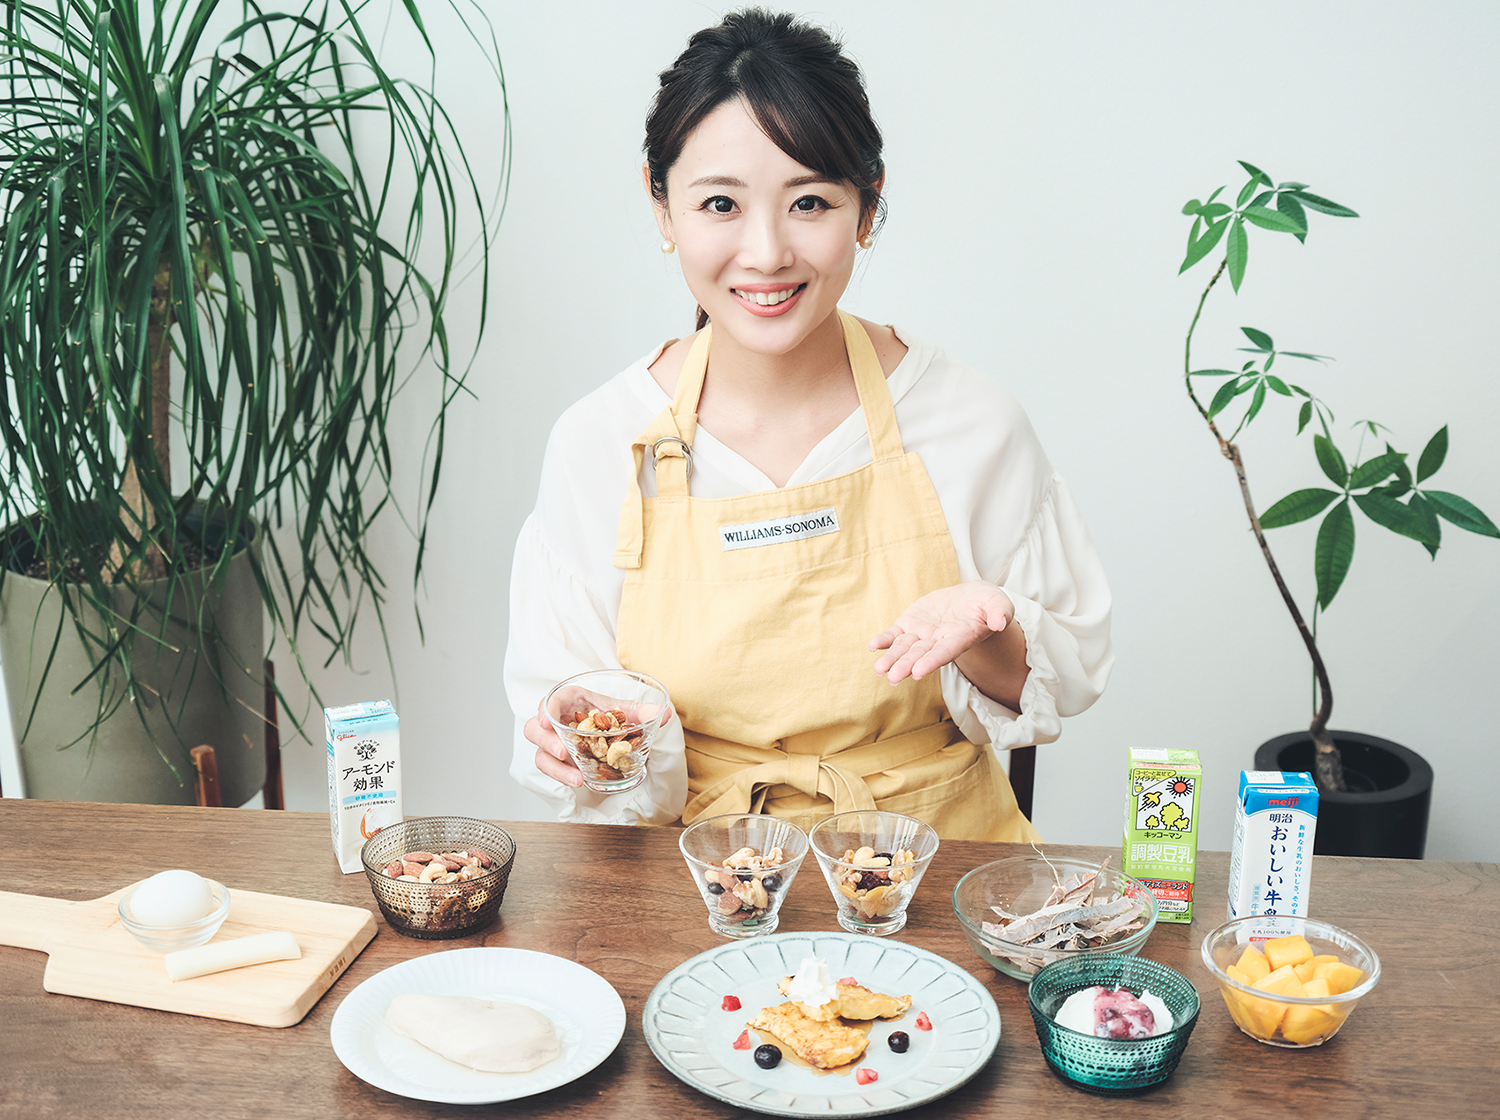 管理栄養士・美容アドバイザーの豊田愛魅さんがおすすめの食材を紹介している写真